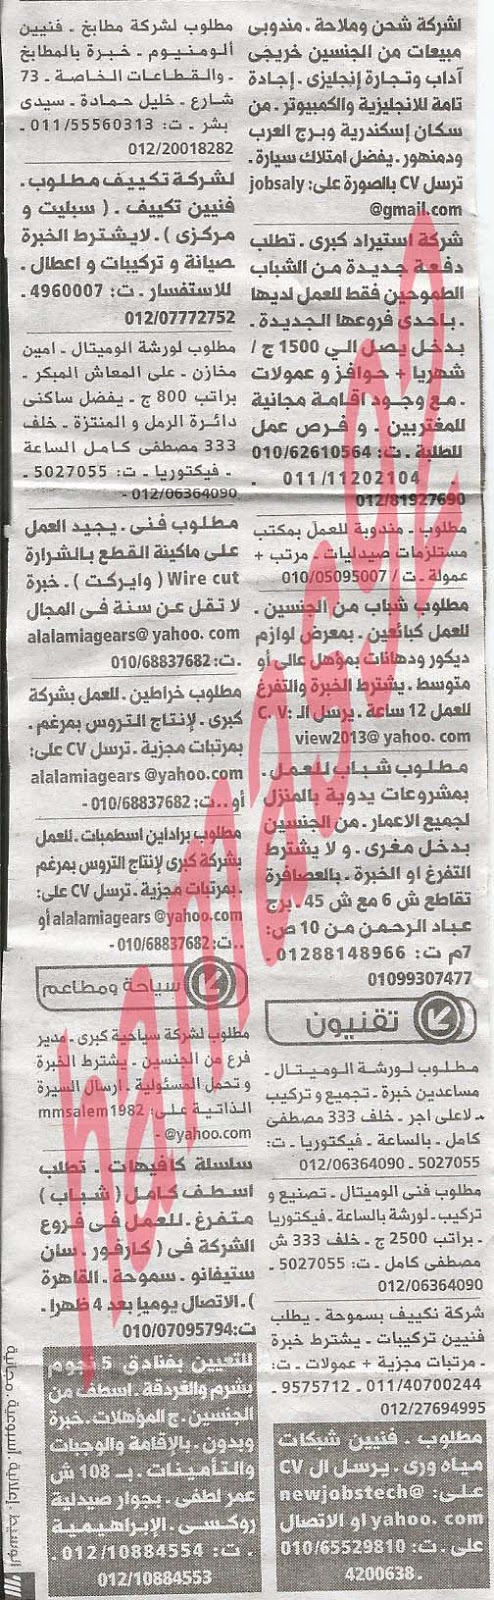 وظائف خالية فى جريدة الوسيط الاسكندرية الاحد 16-06-2013 %D9%88+%D8%B3+%D8%B3+1